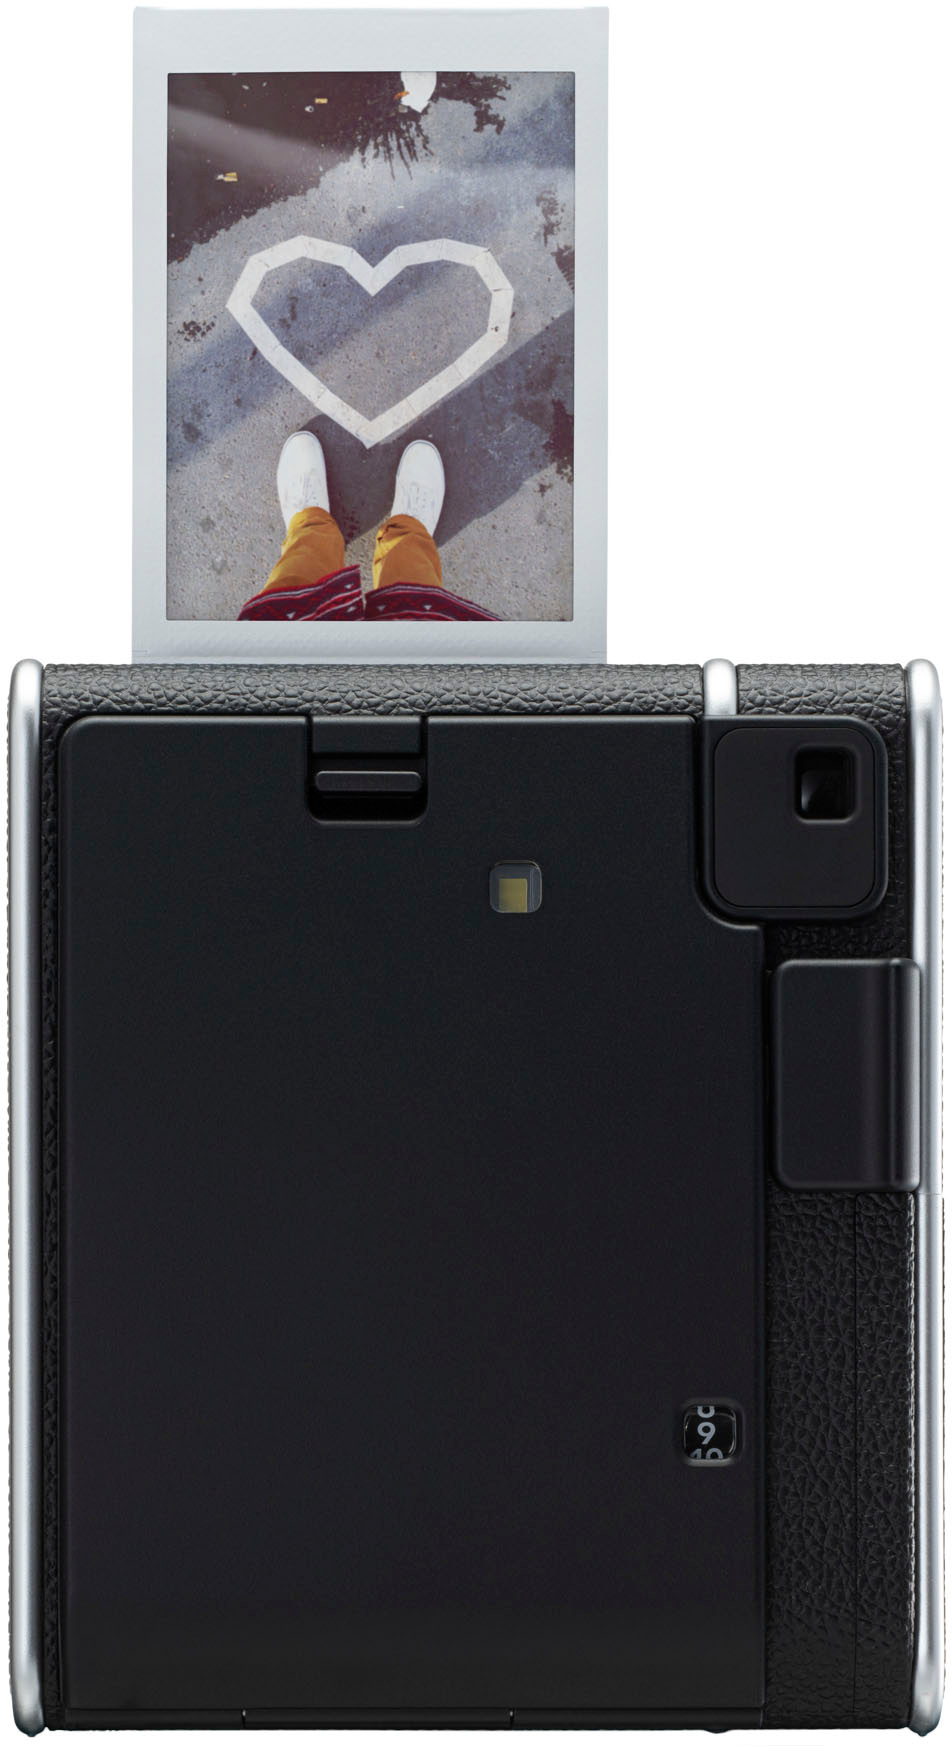 Fujifilm Instax Mini 40 EX D US 16696875 - Best Buy